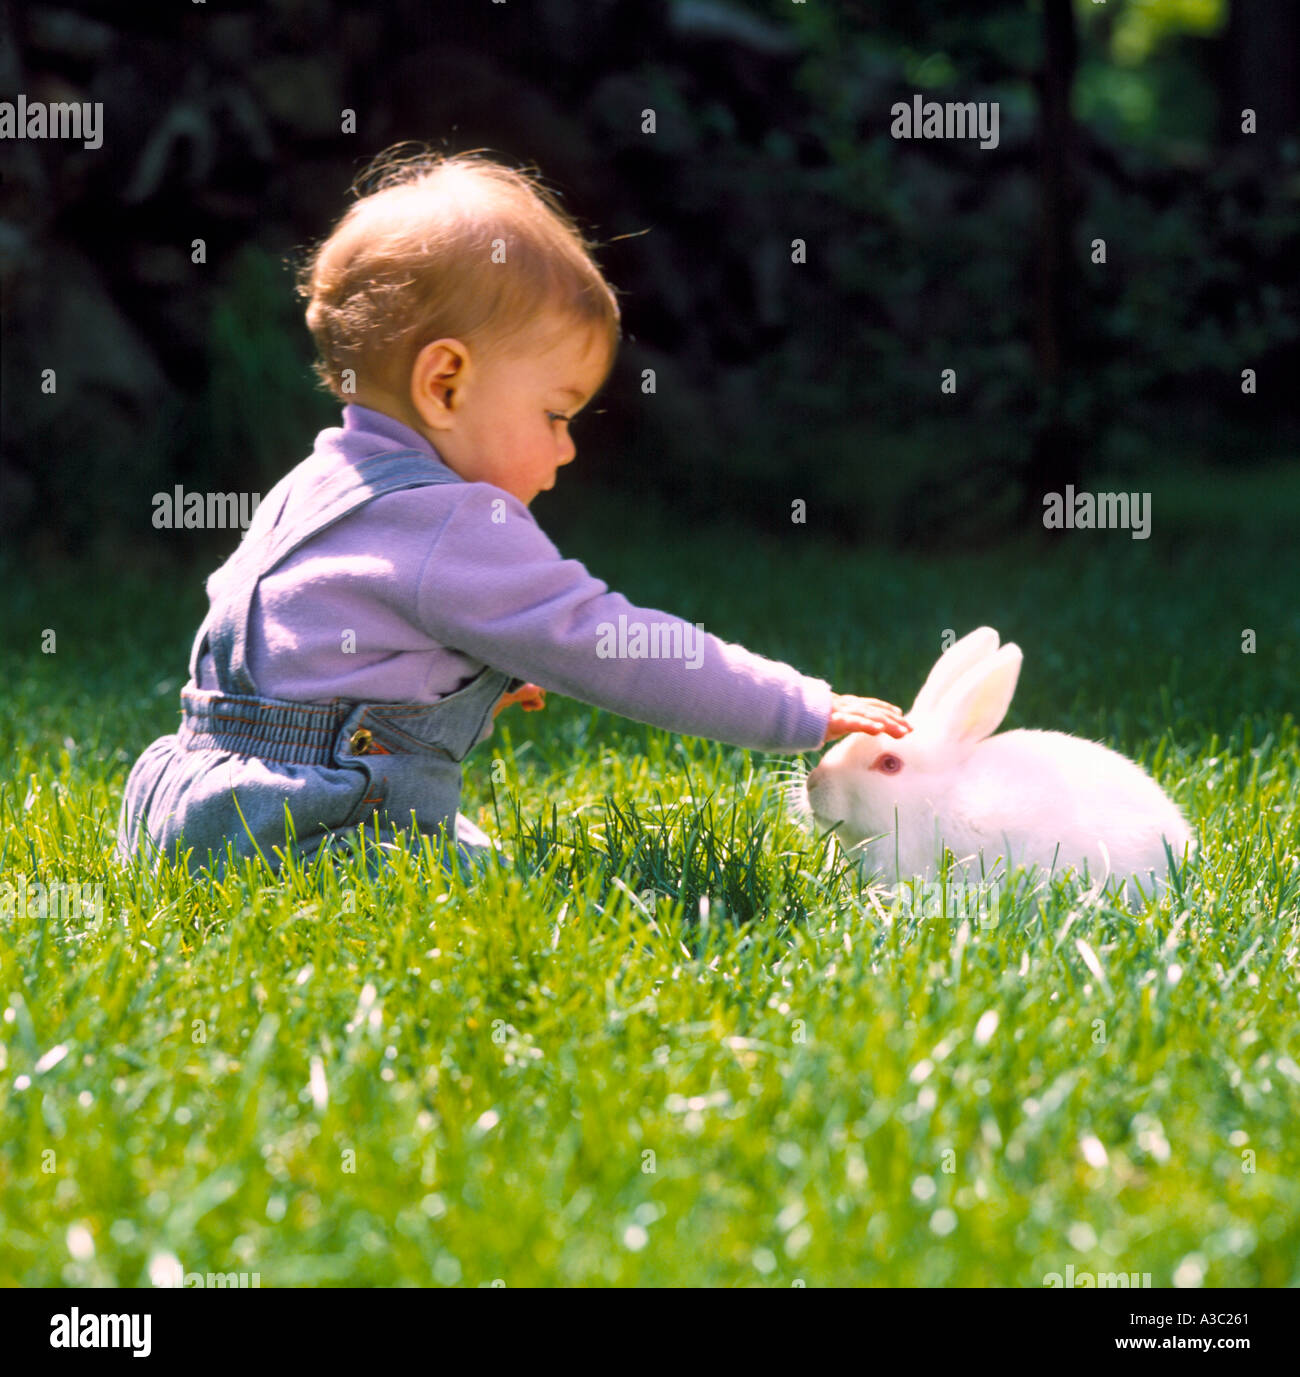 Kleines Kind draußen in dem grünen Rasen, bis ein weißer Hase Kaninchen streicheln Stockfoto